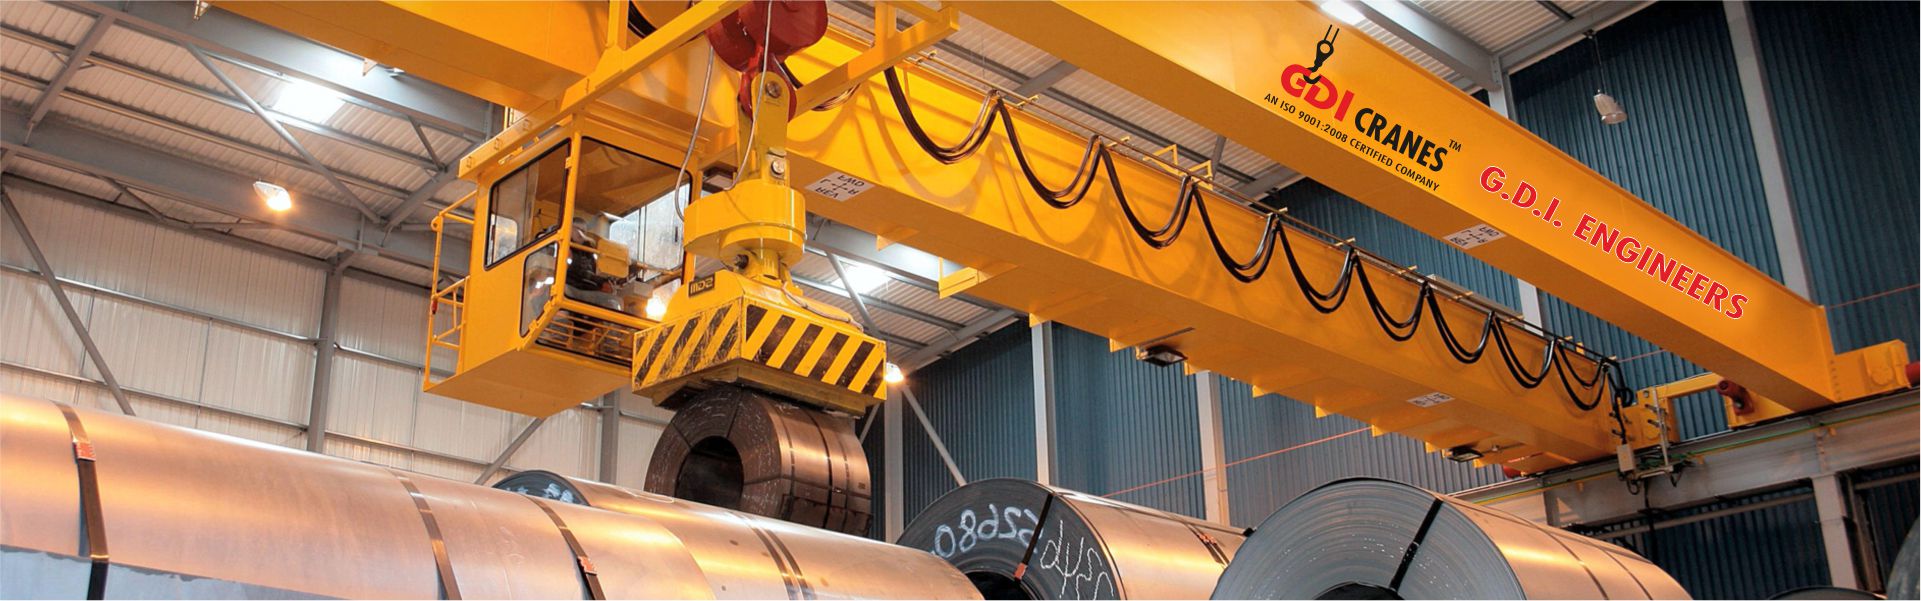 EOT Crane Manufacturers in Ludhiana Punjab India